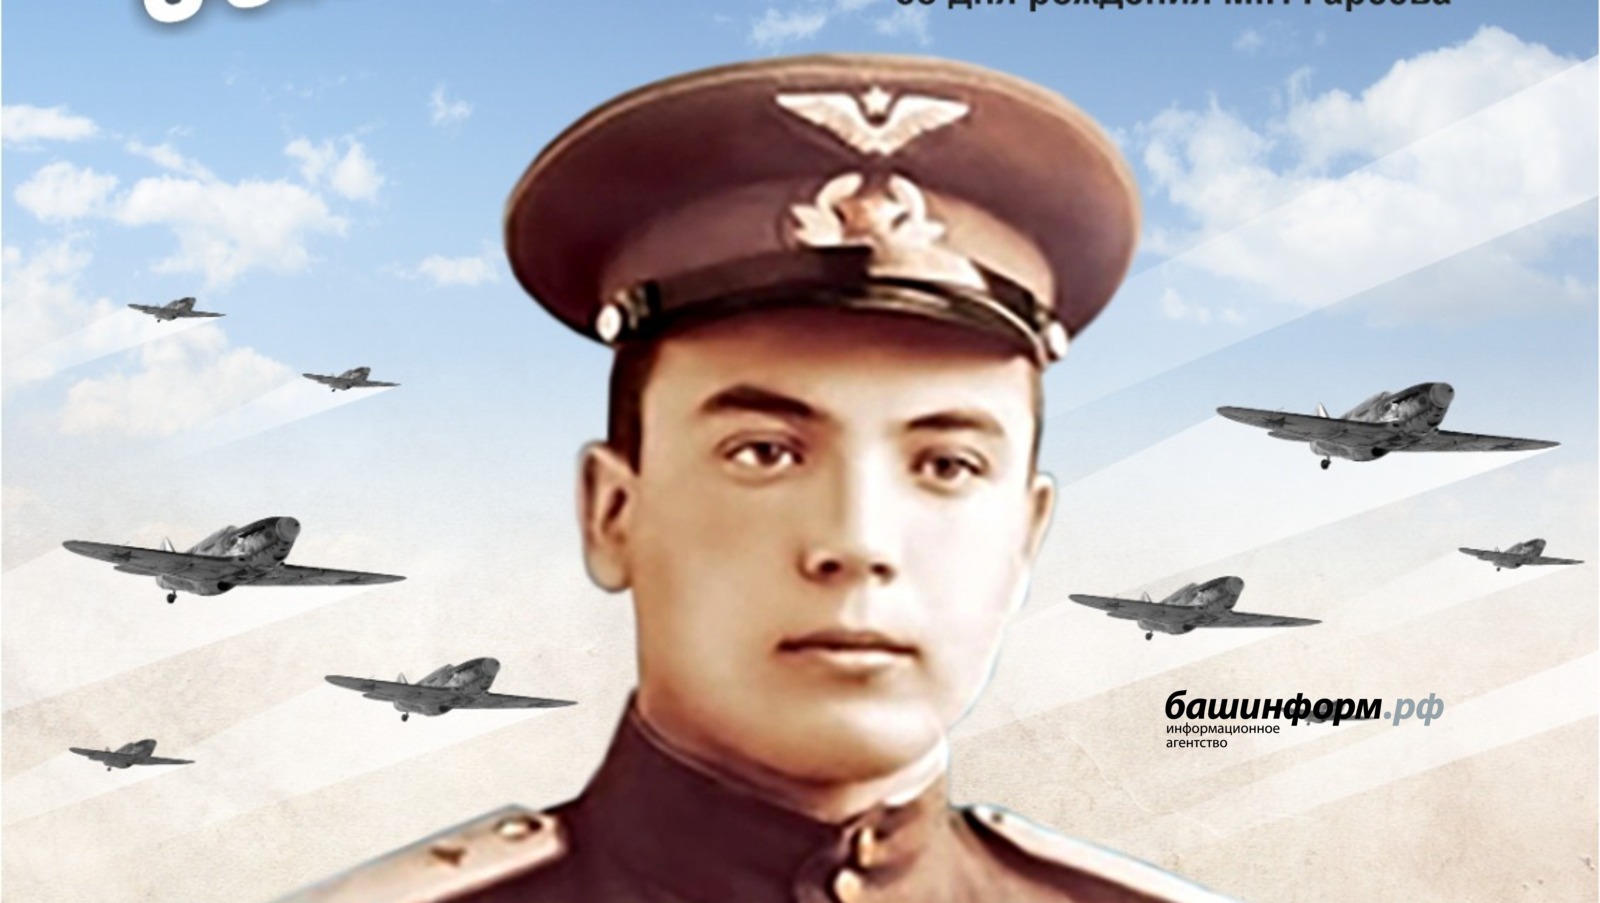 В Уфе откроется выставка «Сокол Башкортостана», посвященная летчику Мусе Гарееву